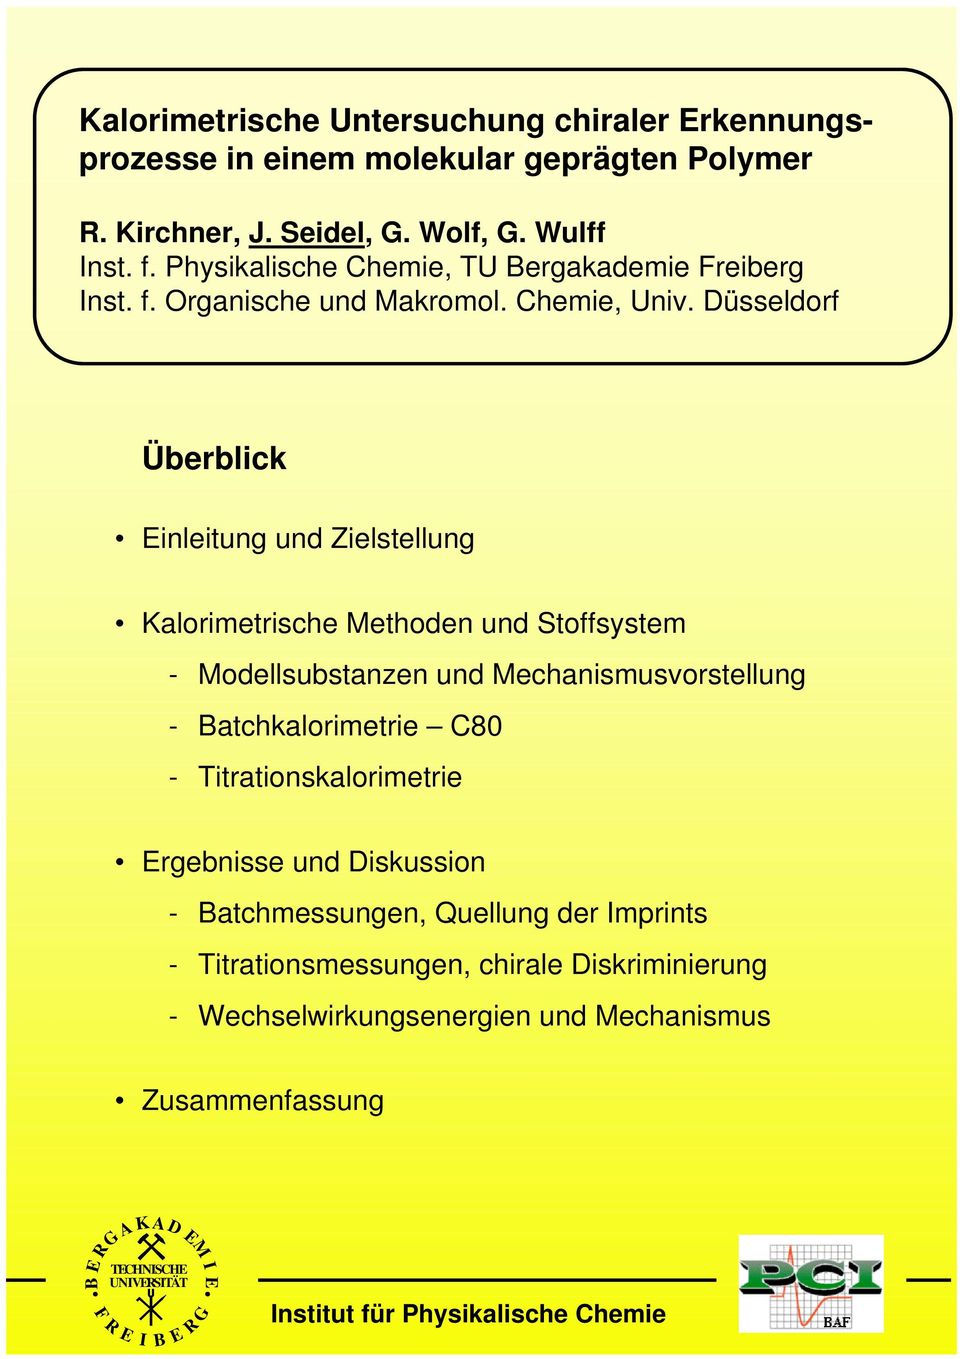 Düsseldorf Überblick inleitung und Zielstellung Kalorimetrische ethoden und Stoffsystem - odellsubstanzen und echanismusvorstellung - atchkalorimetrie C80 -